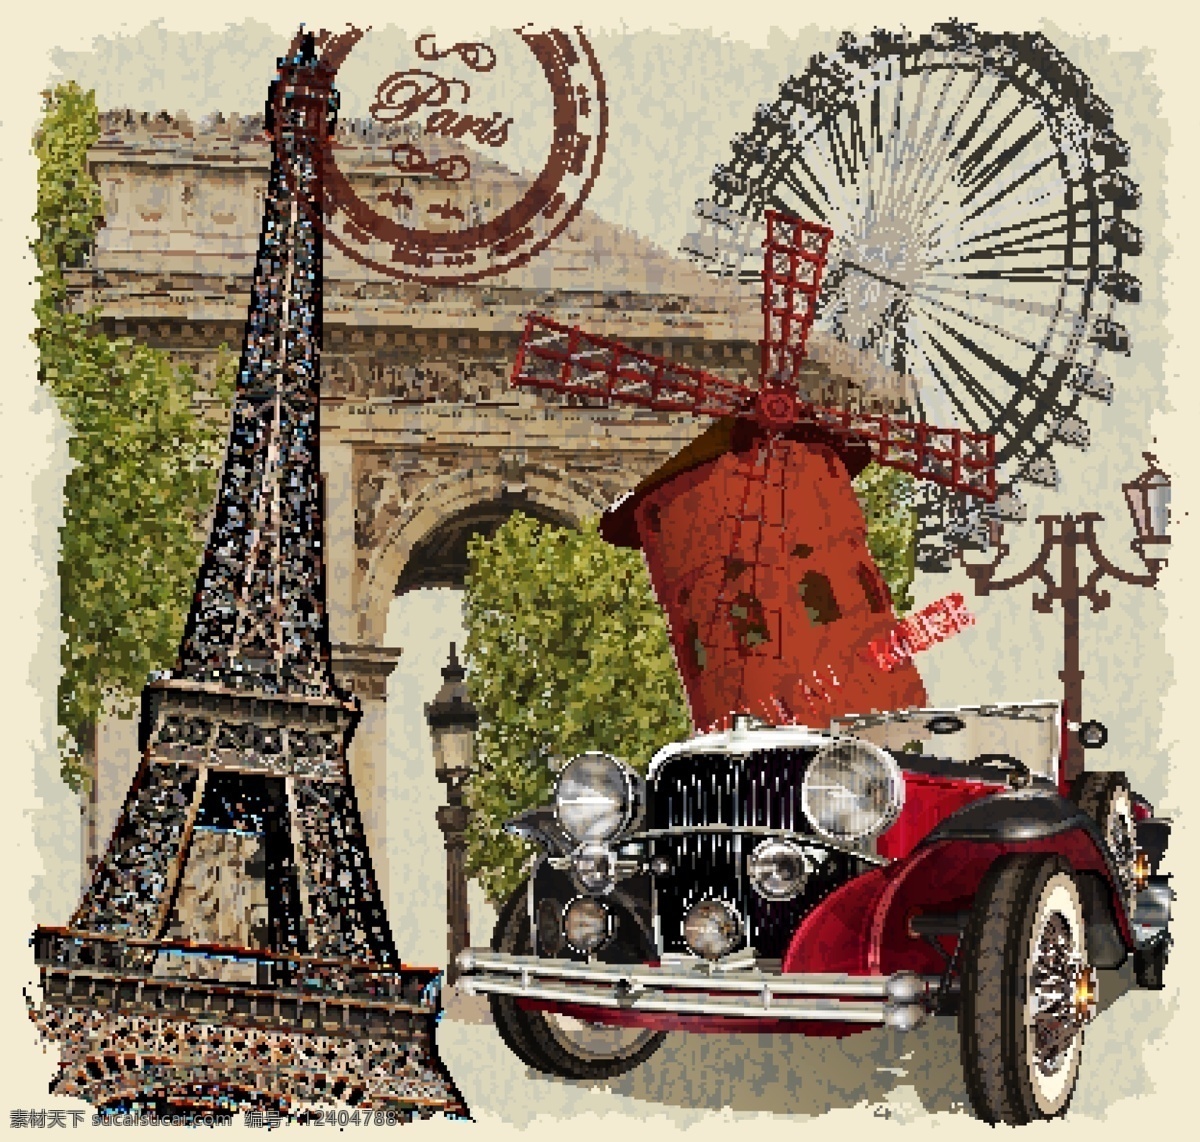 复古法国元素 埃菲尔铁塔 凯旋门 轿车 老爷车 摩天轮 红磨坊 法国 邮戳